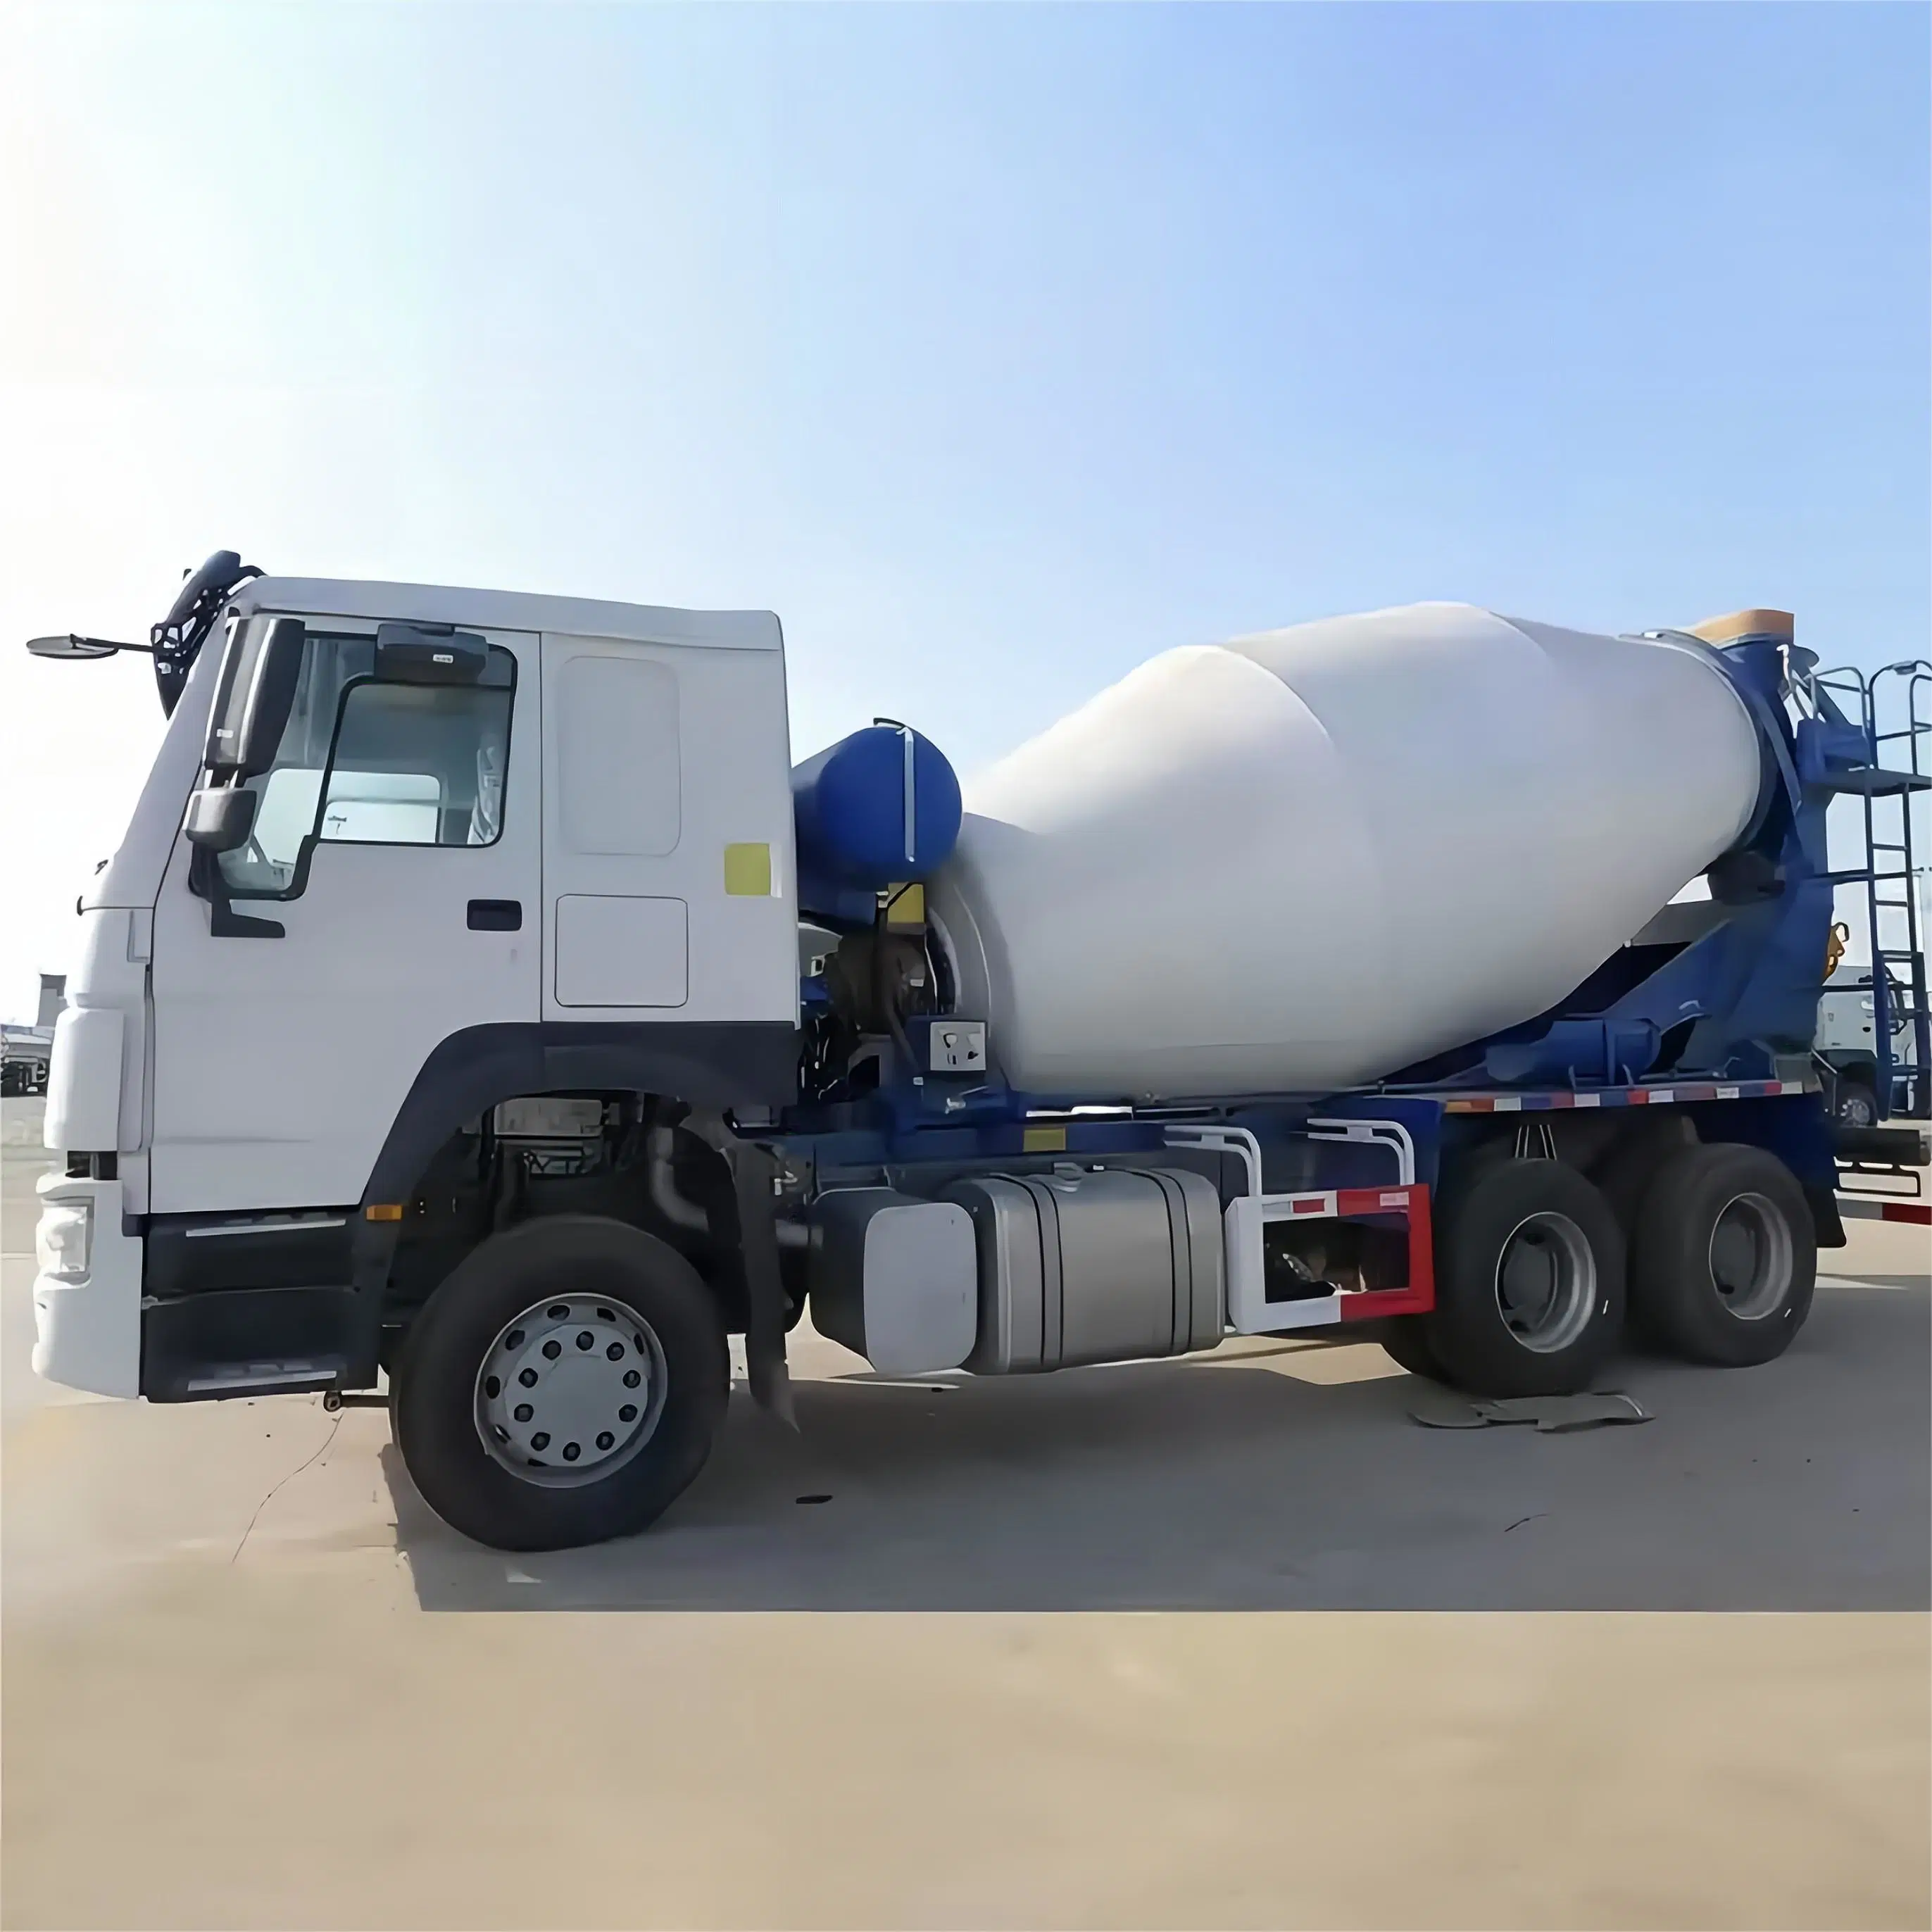 Concrete Mixer Truck Concrete Mixers Cement Mixer 2m3.3m3.4m3.6m3.8m3.10m3.12m3 Construction Vehicle